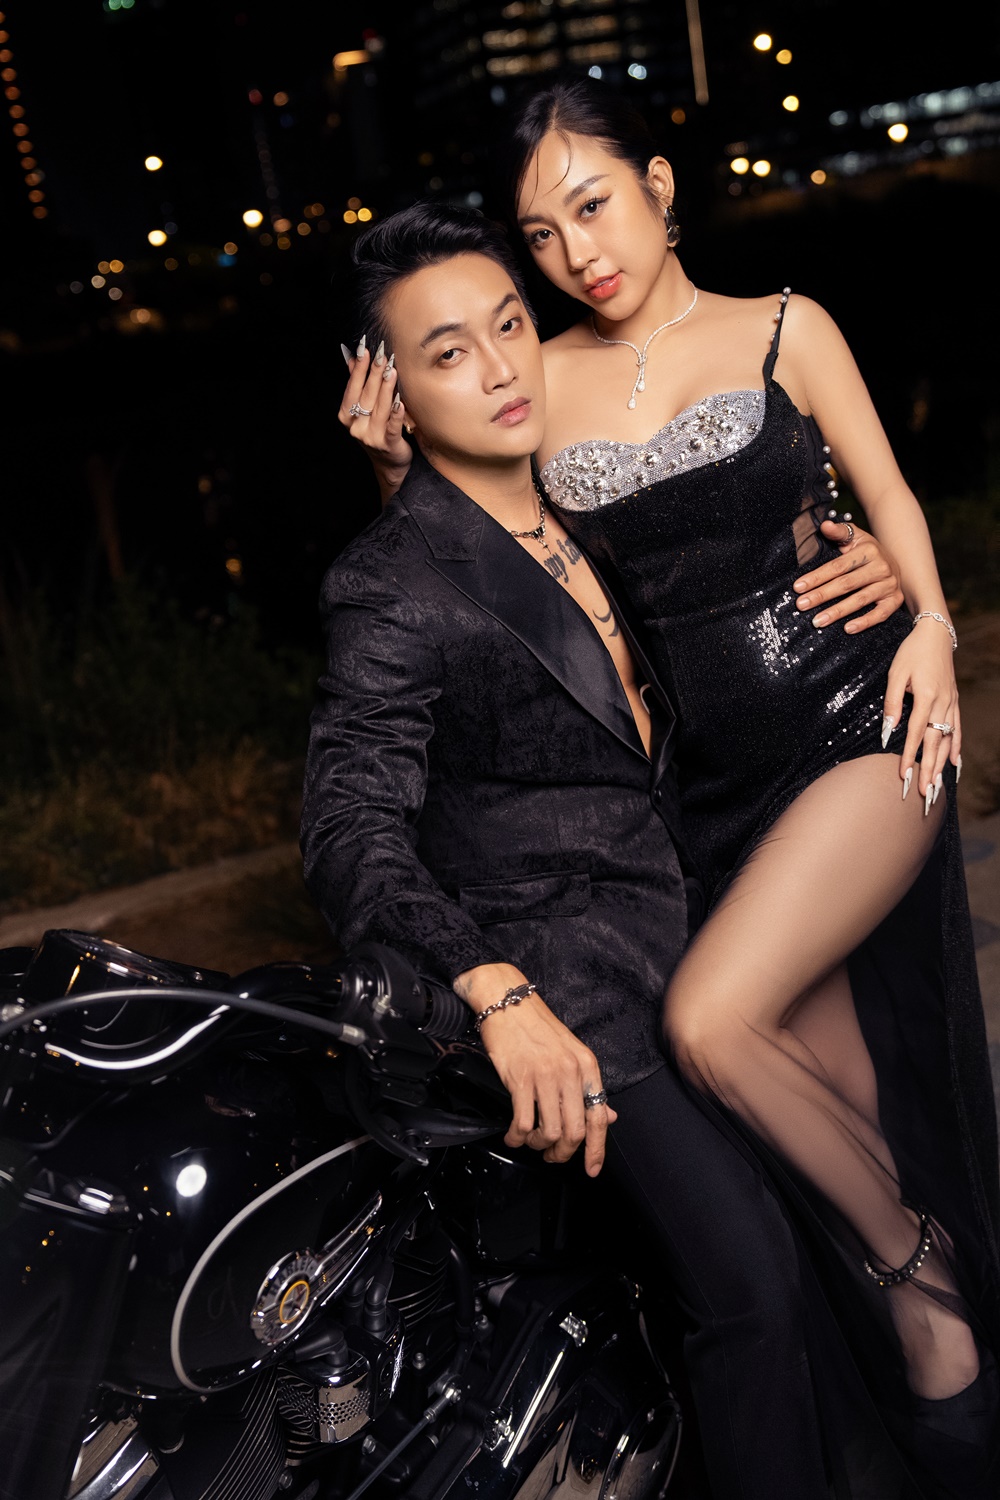 Trọn bộ ảnh cưới nóng bỏng mắt của TiTi (HKT) và bà xã DJ gợi cảm - Ảnh 2.